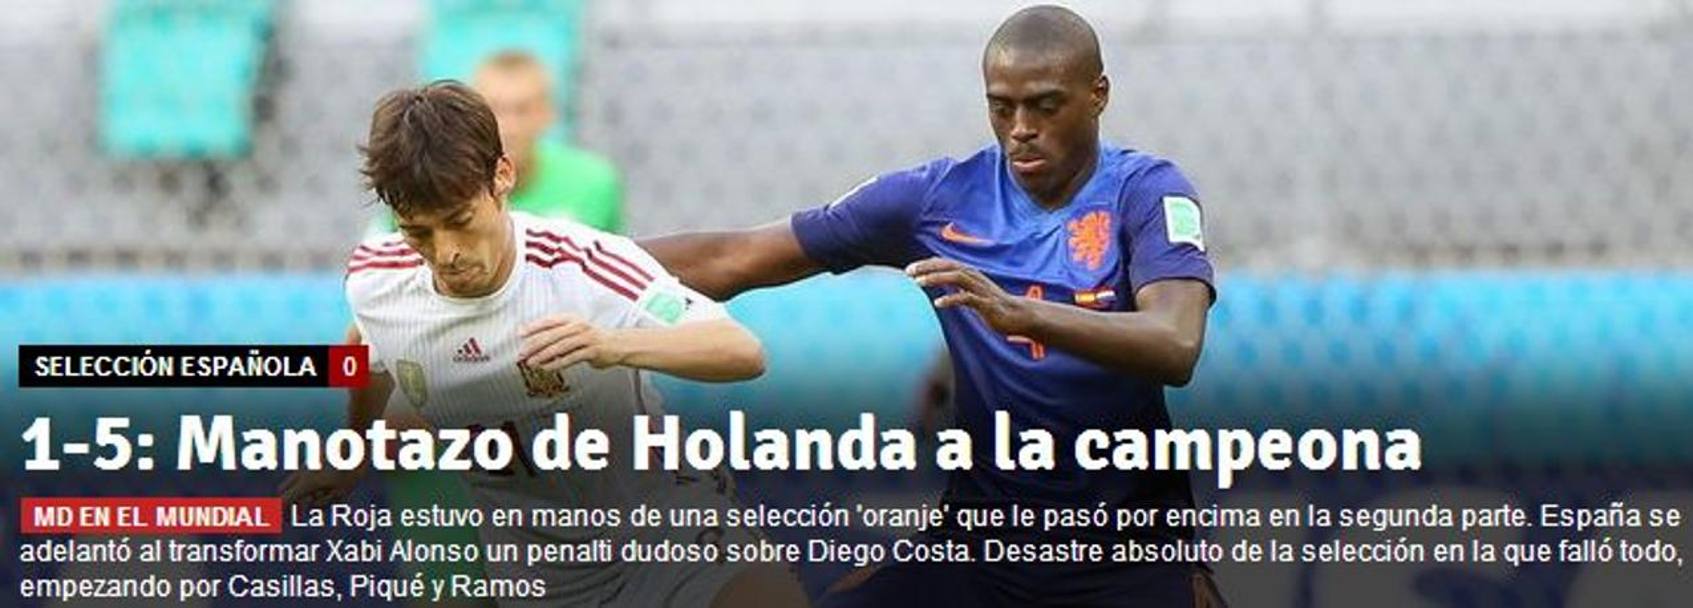 El Mundo Deportivo sottolinea anche 